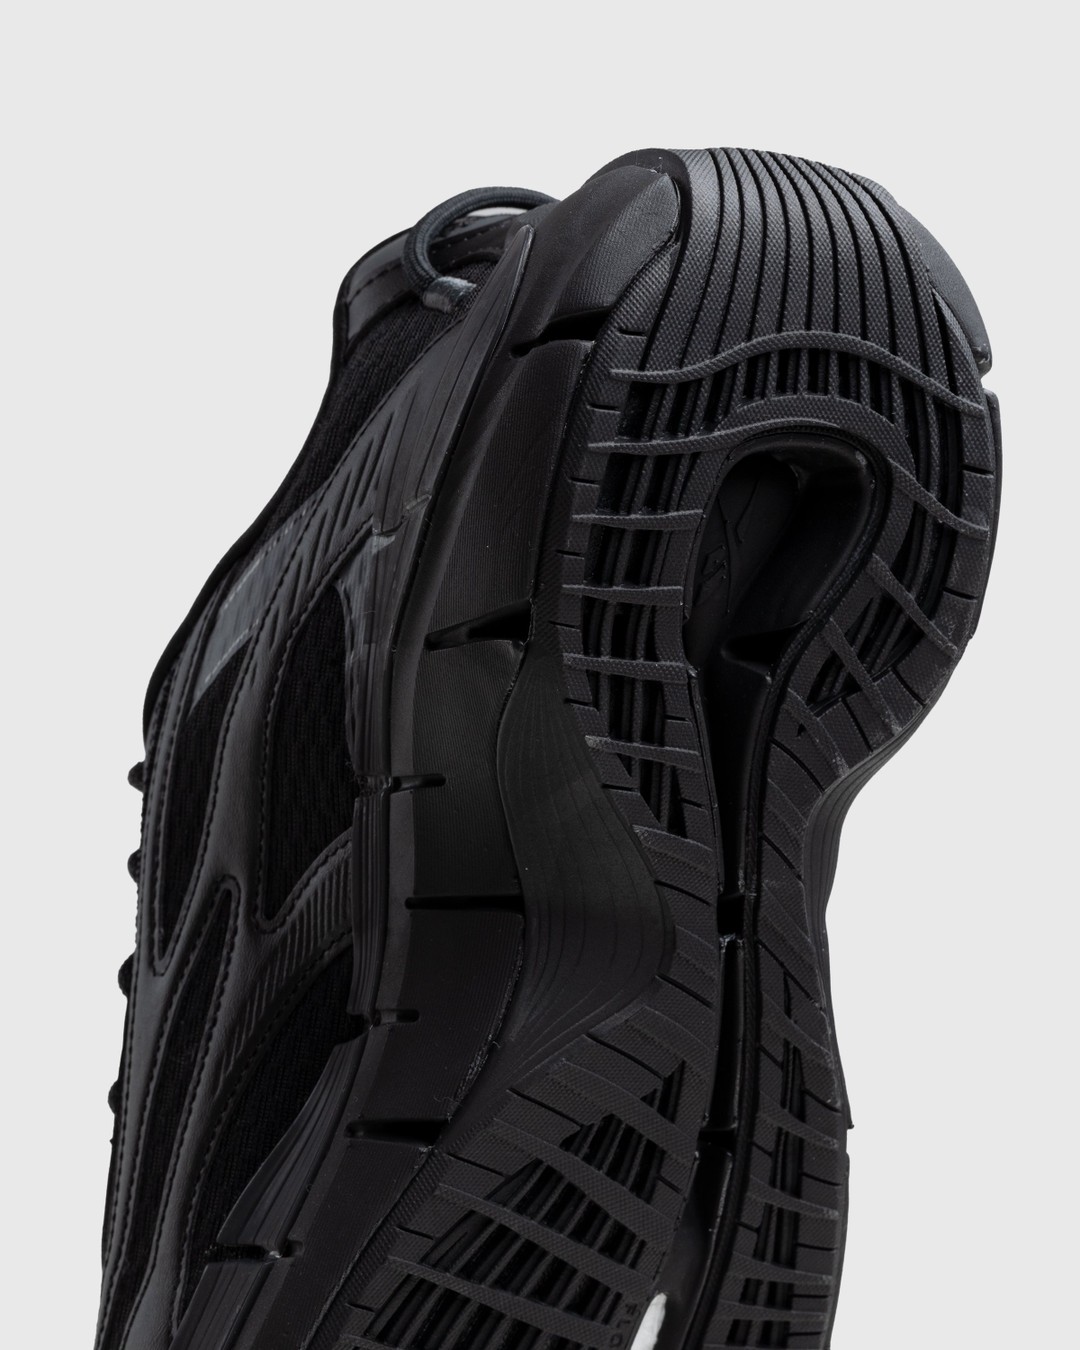 Reebok – Zig Kinetica 2.5 Black - Low Top Sneakers - Black - Image 6